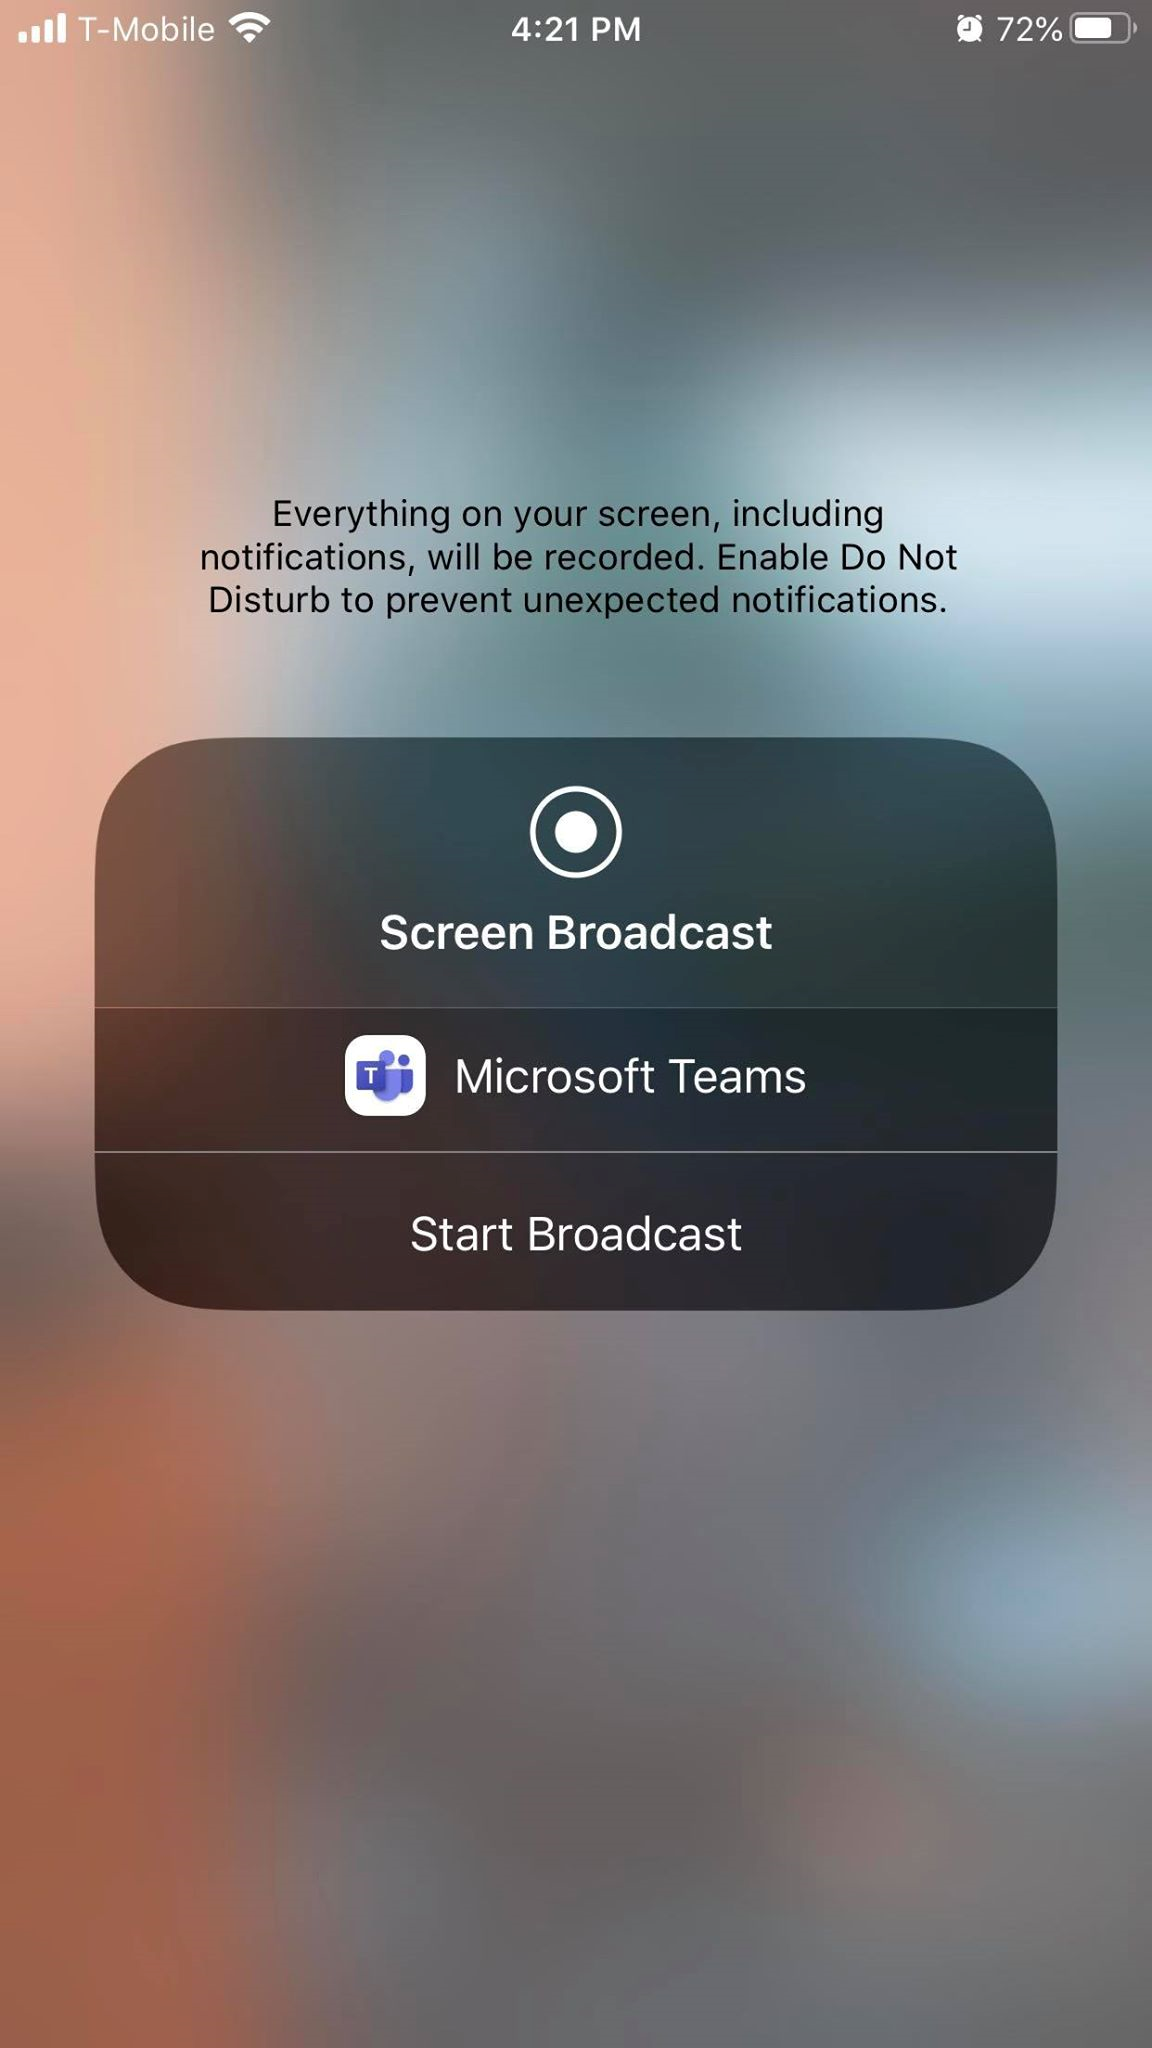 Capture d’écran de la fenêtre Démarrer la diffusion dans l’application mobile Teams.